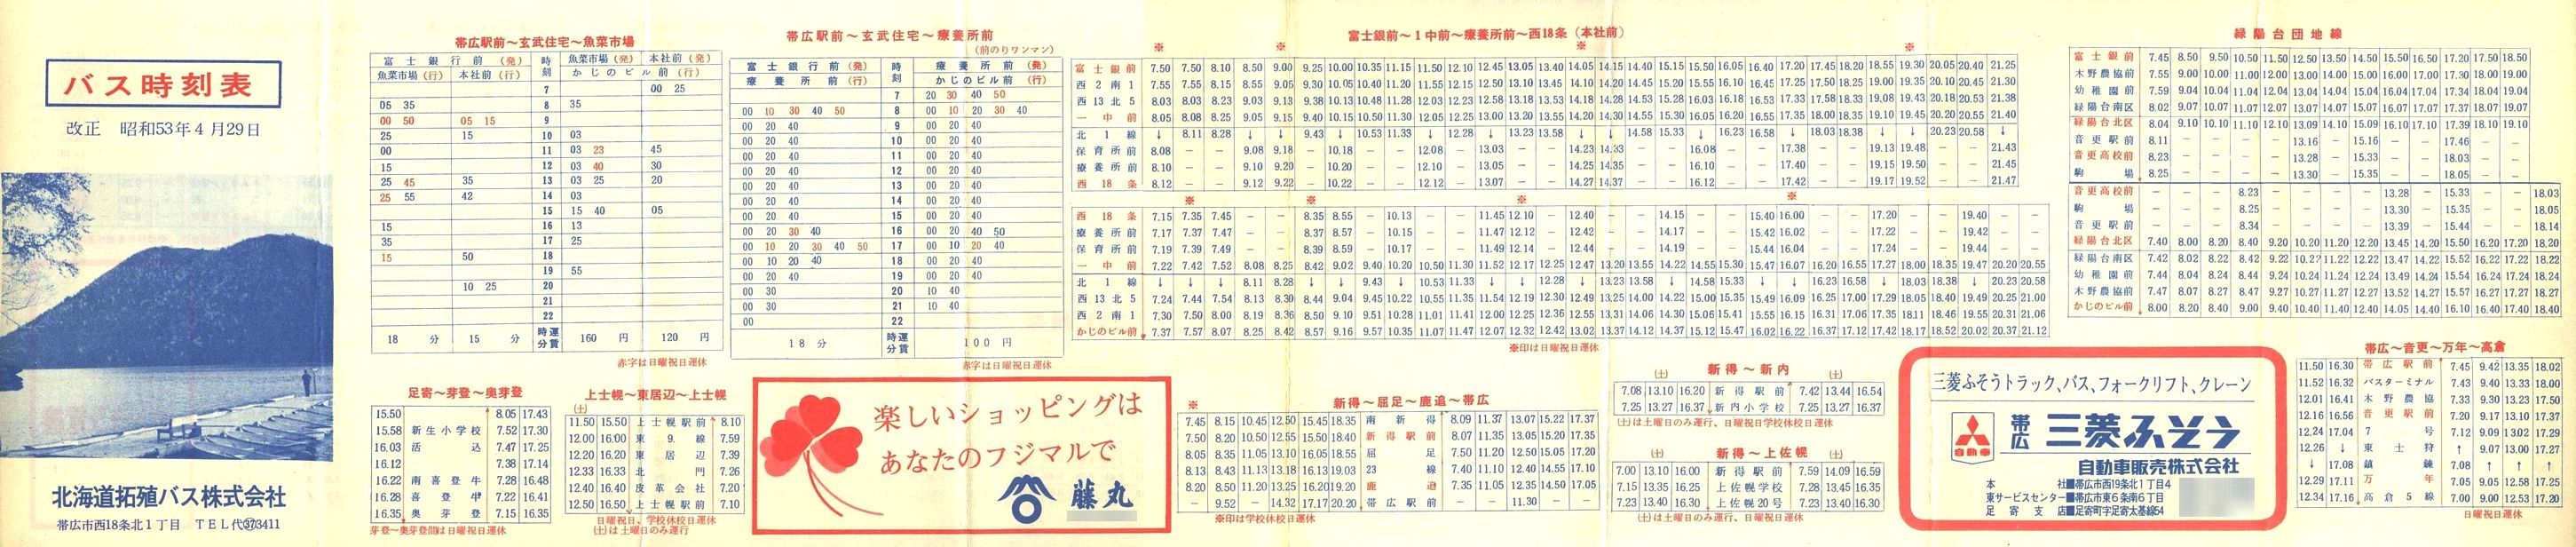 1978-04-29改正_北海道拓殖バス_時刻表表面